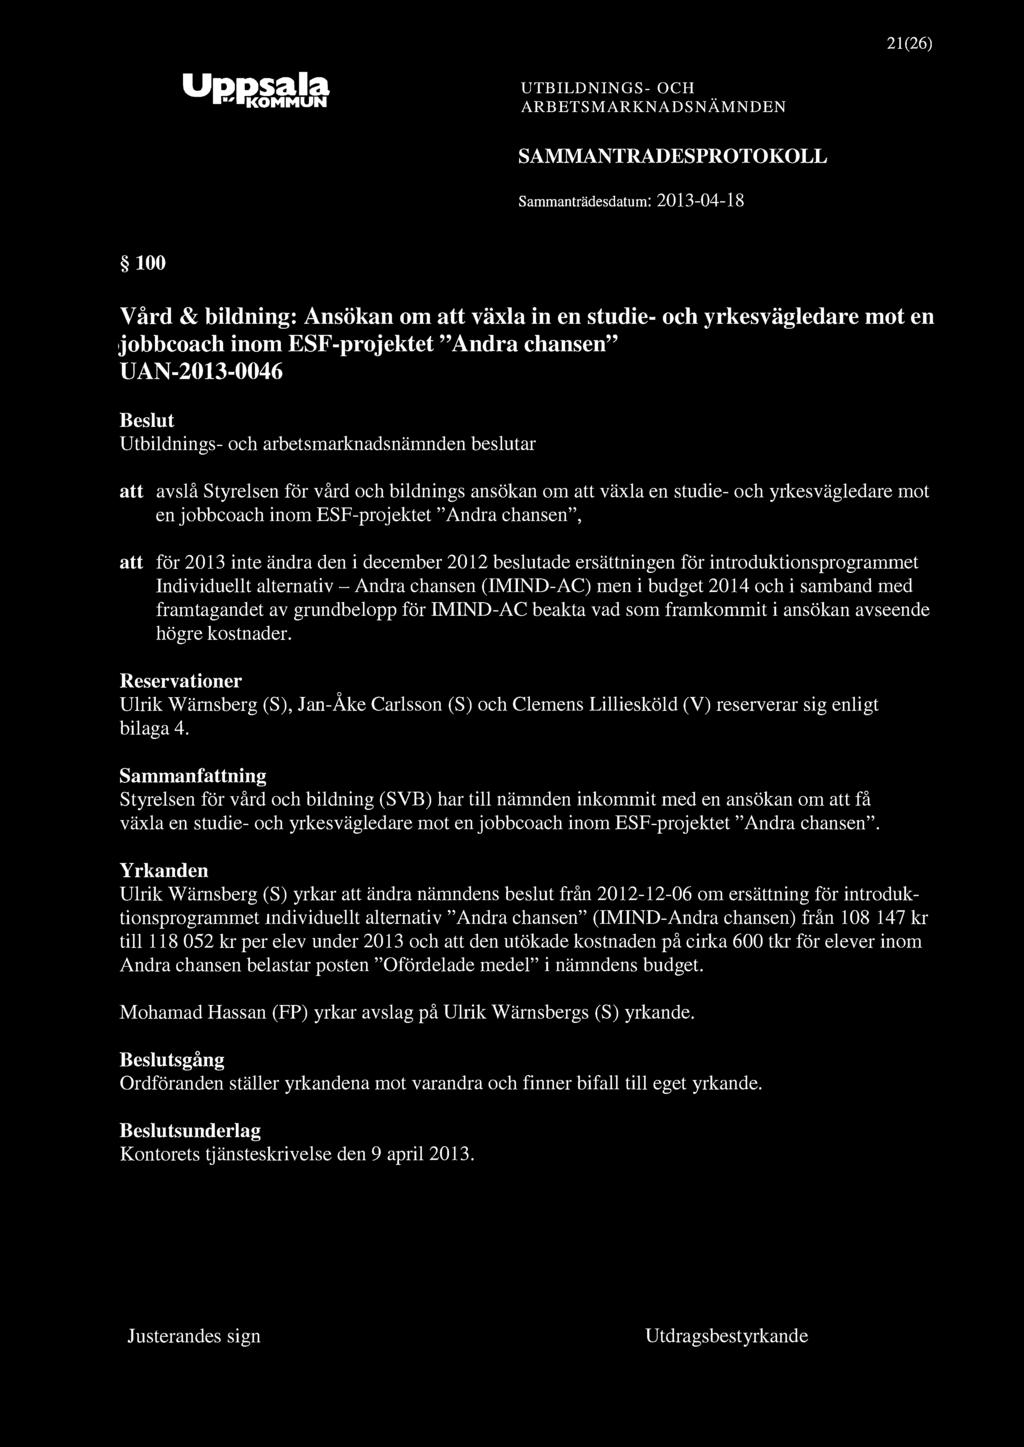 SAMMANTRADESPROTOKOLL 21(26) 100 Vård & bildning: Ansökan om att växla in en studie- och yrkes vägledare mot en jobbcoach inom ESF-projektet "Andra chansen" UAN-2013-0046 att avslå Styrelsen för vård